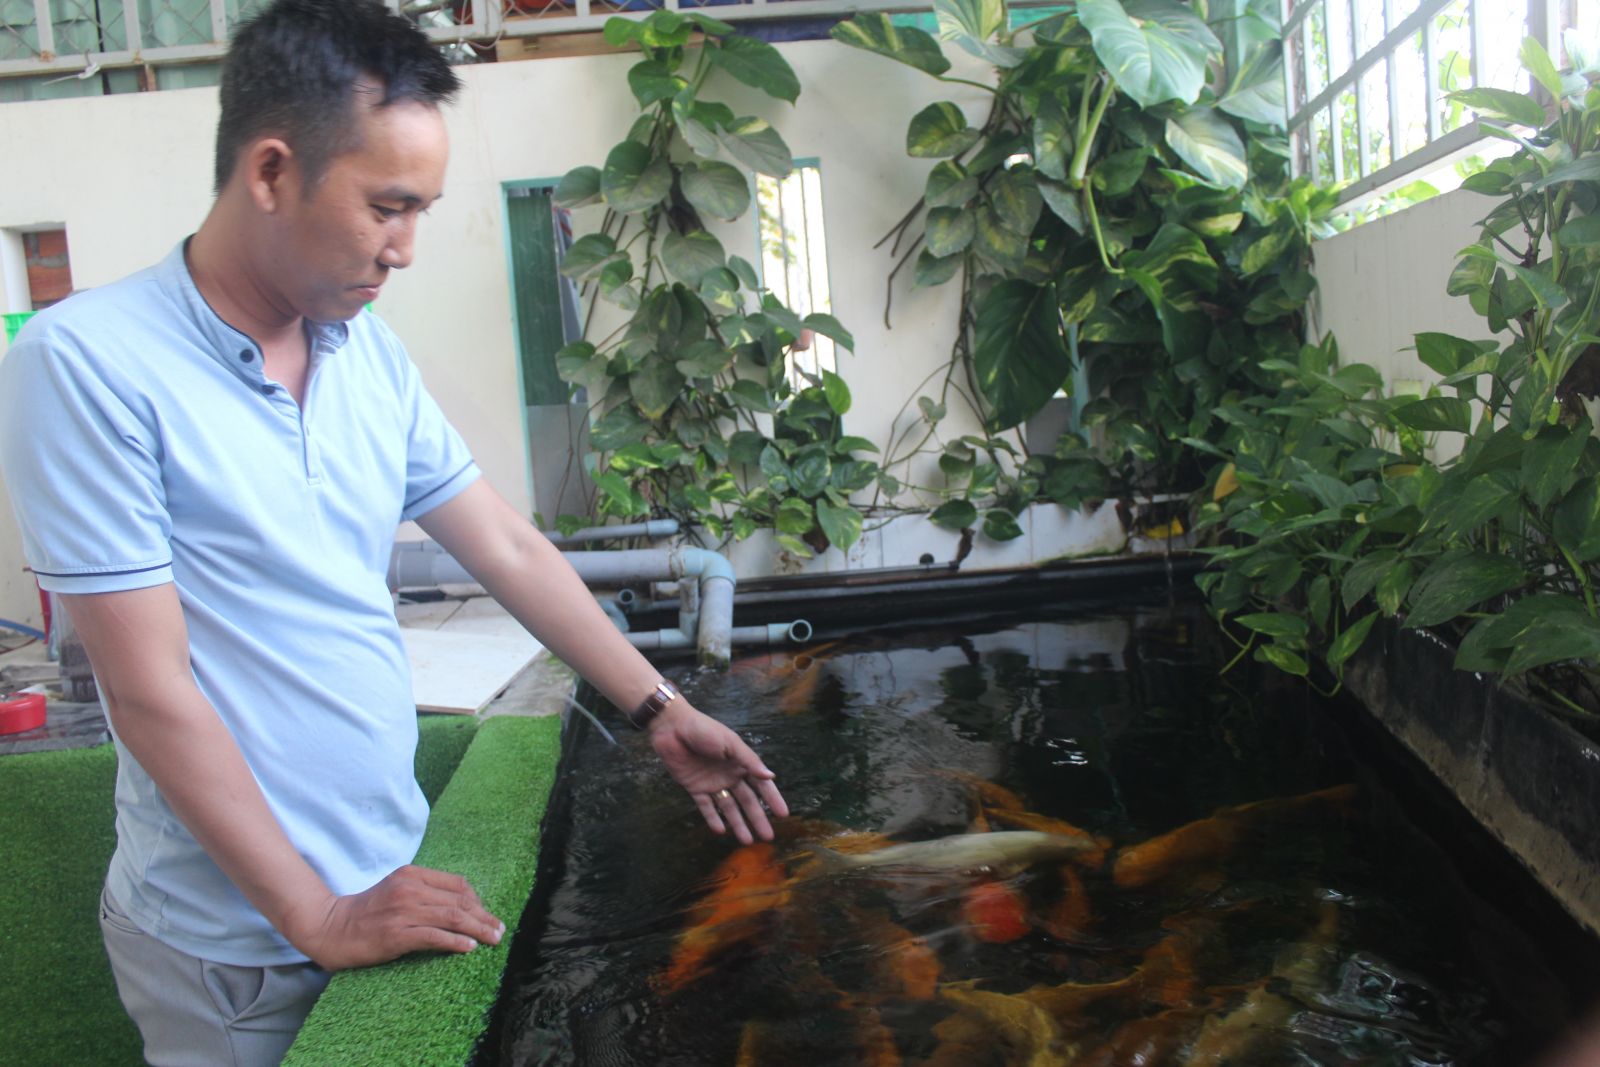 Hiện nay, trào lưu nuôi cá Koi trong hồ sân vườn tại hộ gia đình được nhiều người hưởng ứng